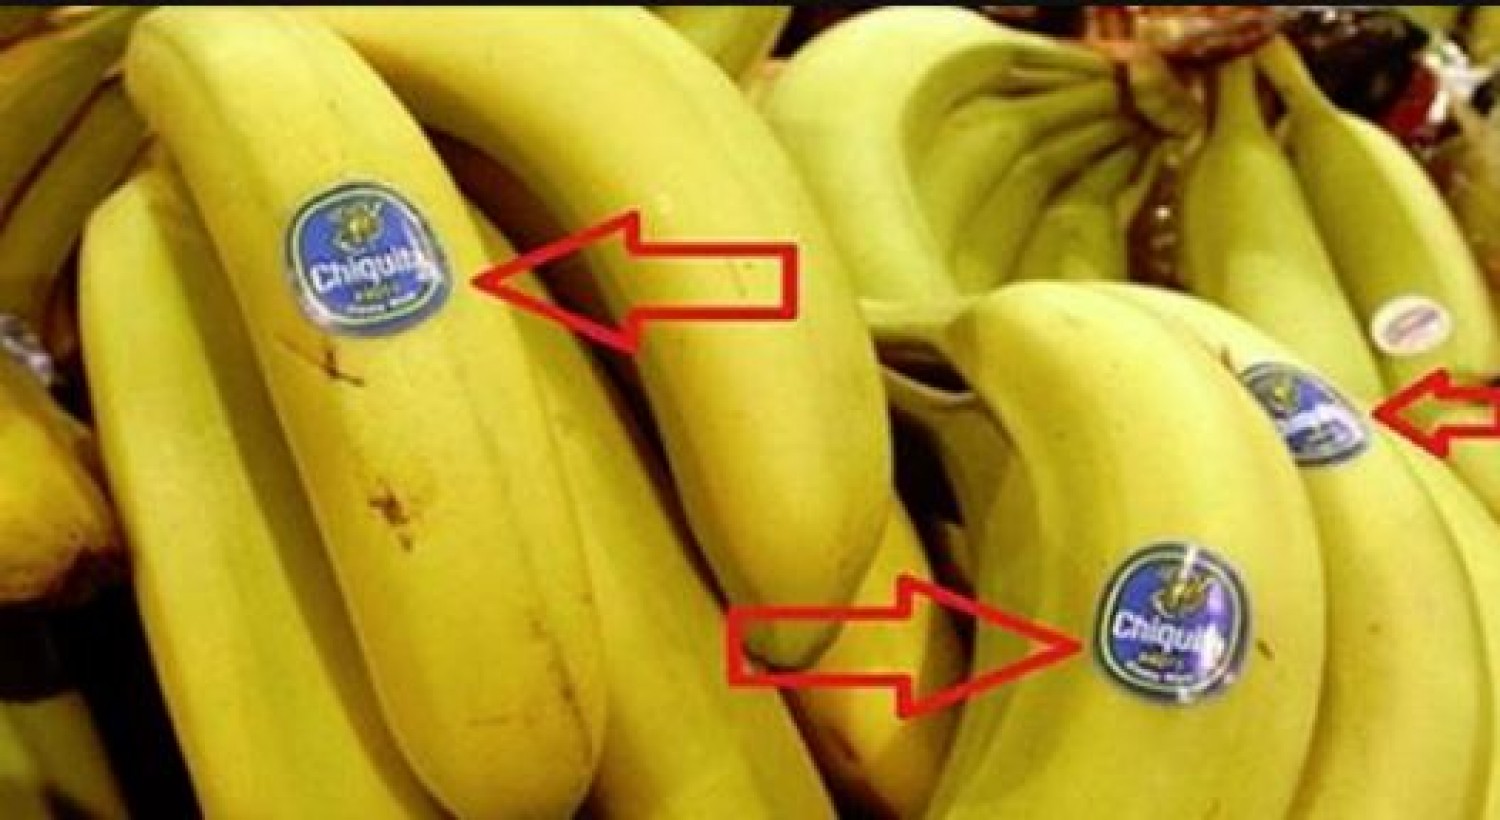 Mindenképpen nézd meg a banánon lévő címkét!